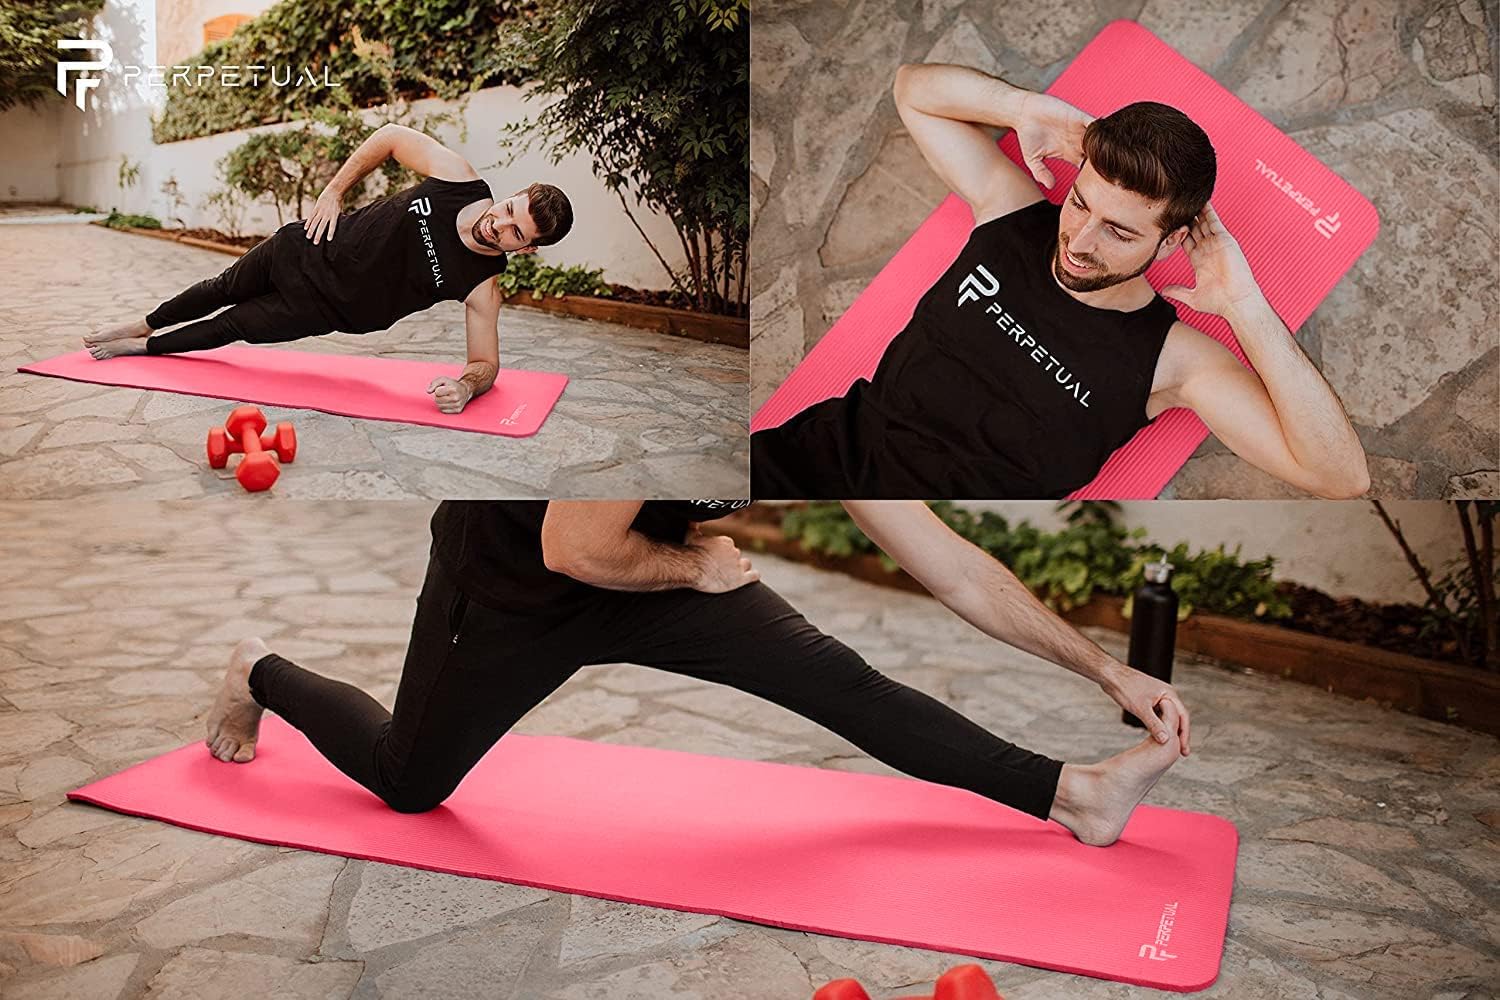 Esterilla De Yoga Y Pilates Antideslizante De 10mm Perpetual Con Correa Y Bolsa De Transporte